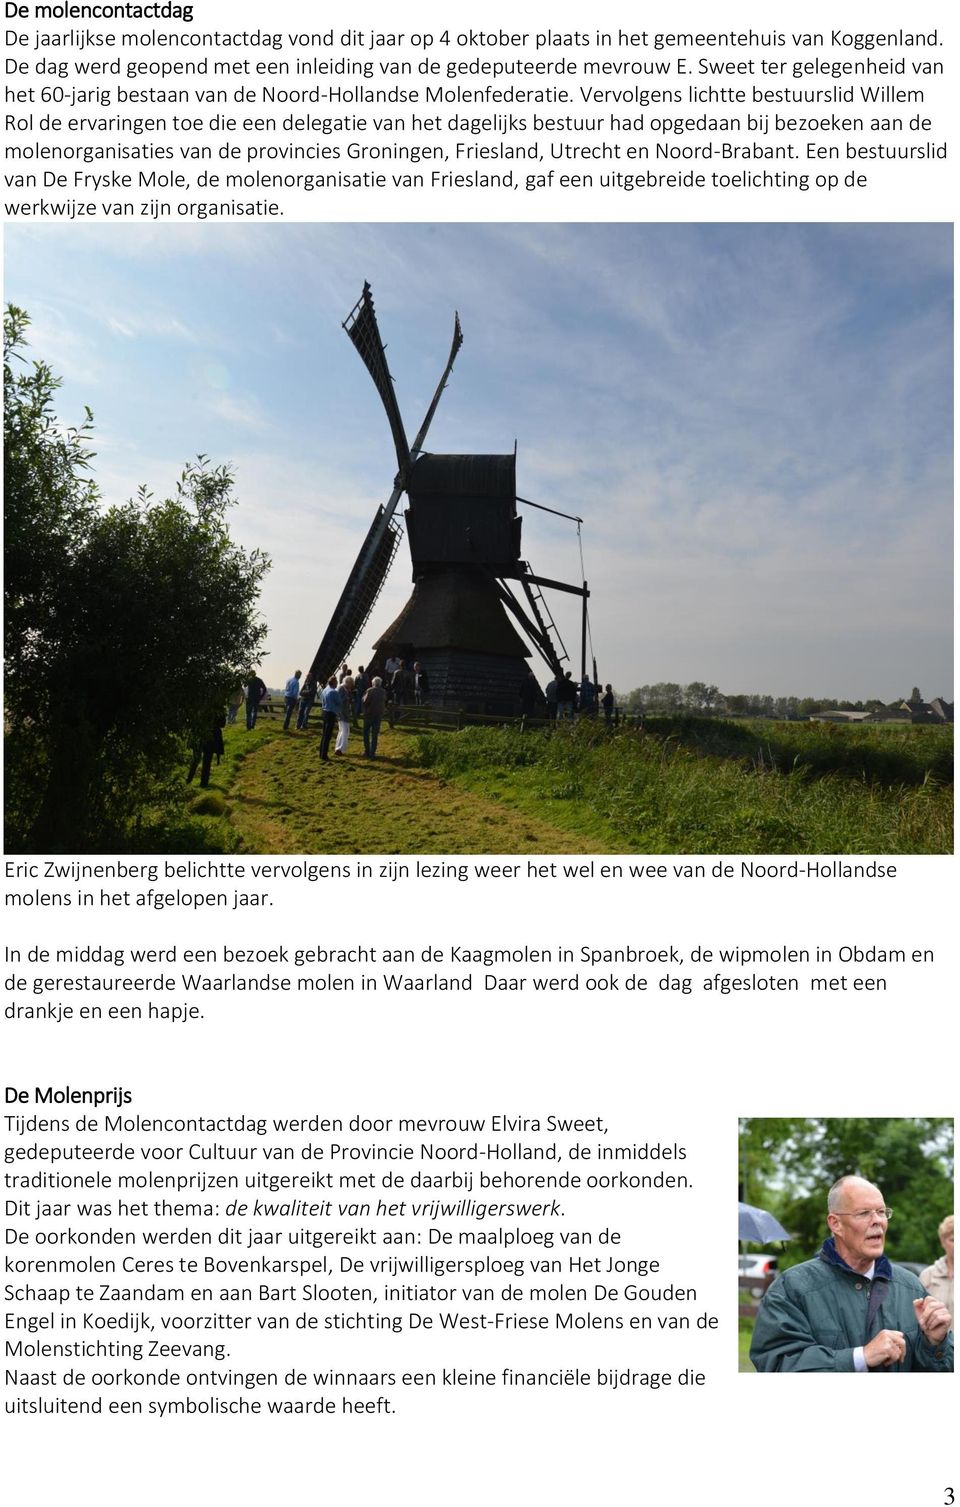 Vervolgens lichtte bestuurslid Willem Rol de ervaringen toe die een delegatie van het dagelijks bestuur had opgedaan bij bezoeken aan de molenorganisaties van de provincies Groningen, Friesland,